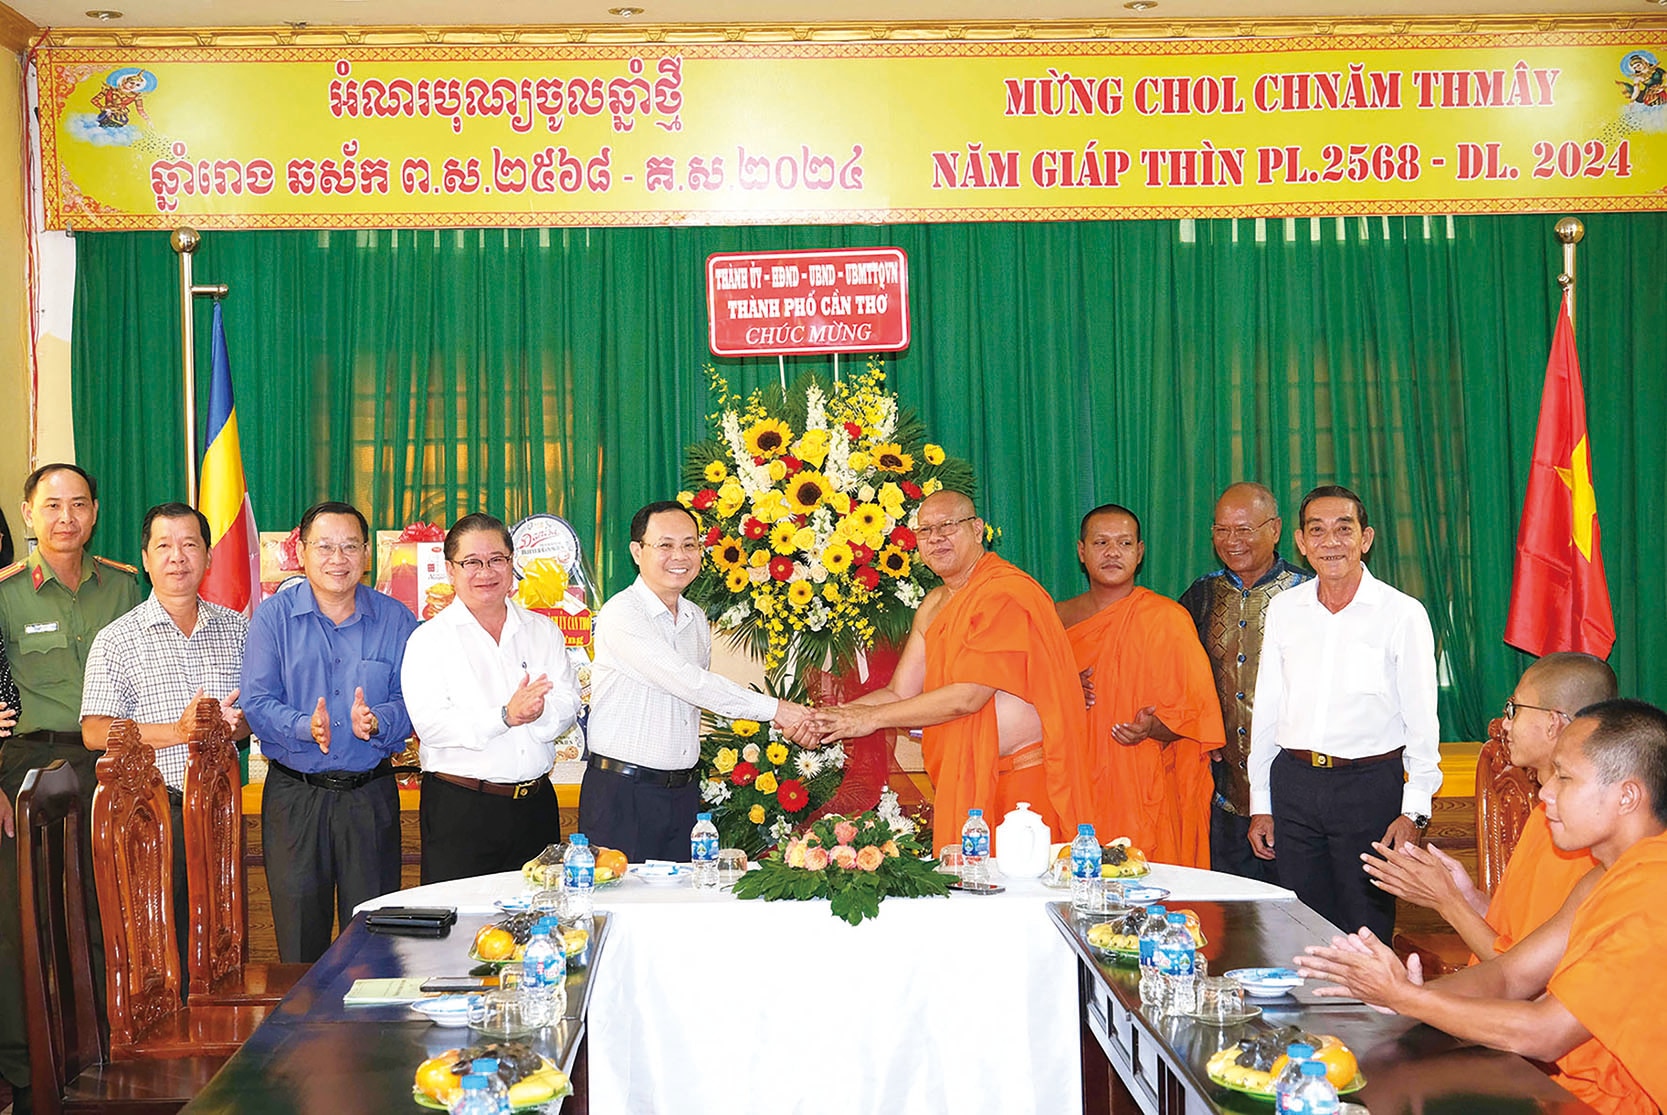 Lãnh đạo TP.Cần Thơ chúc mừng tết cổ truyền đồng bào dân tộc Khmer